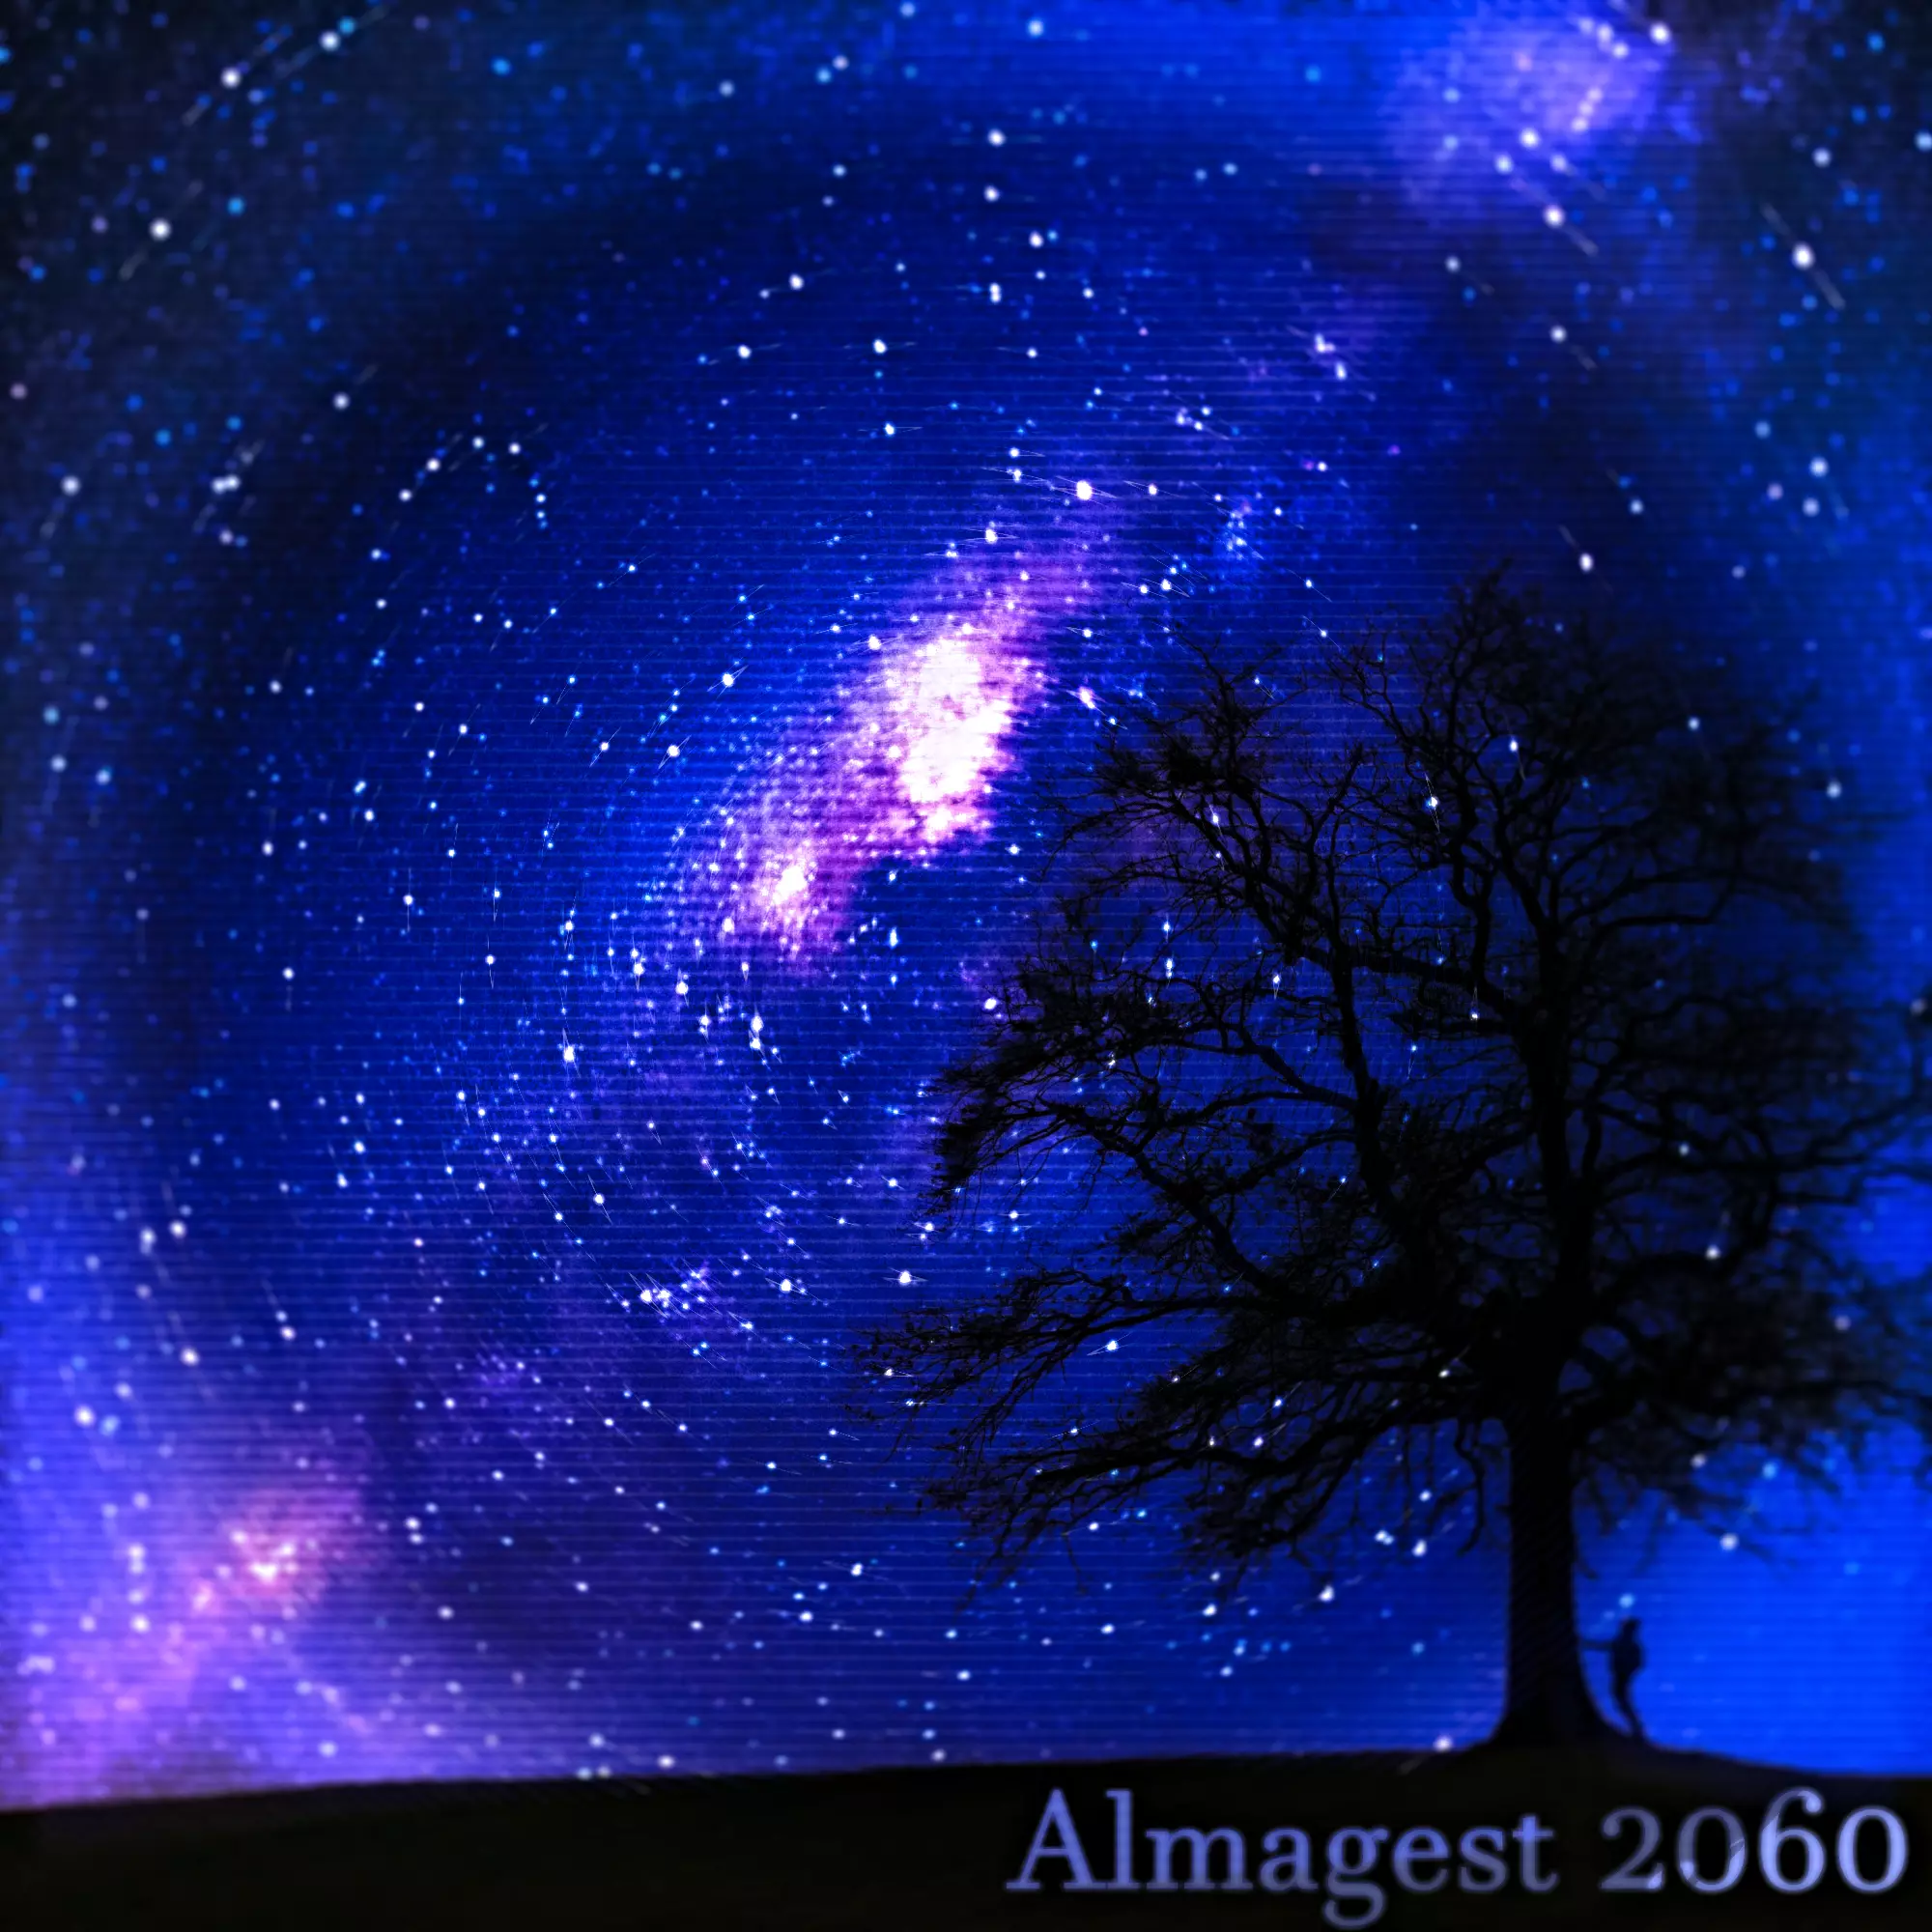 Almagest 2060